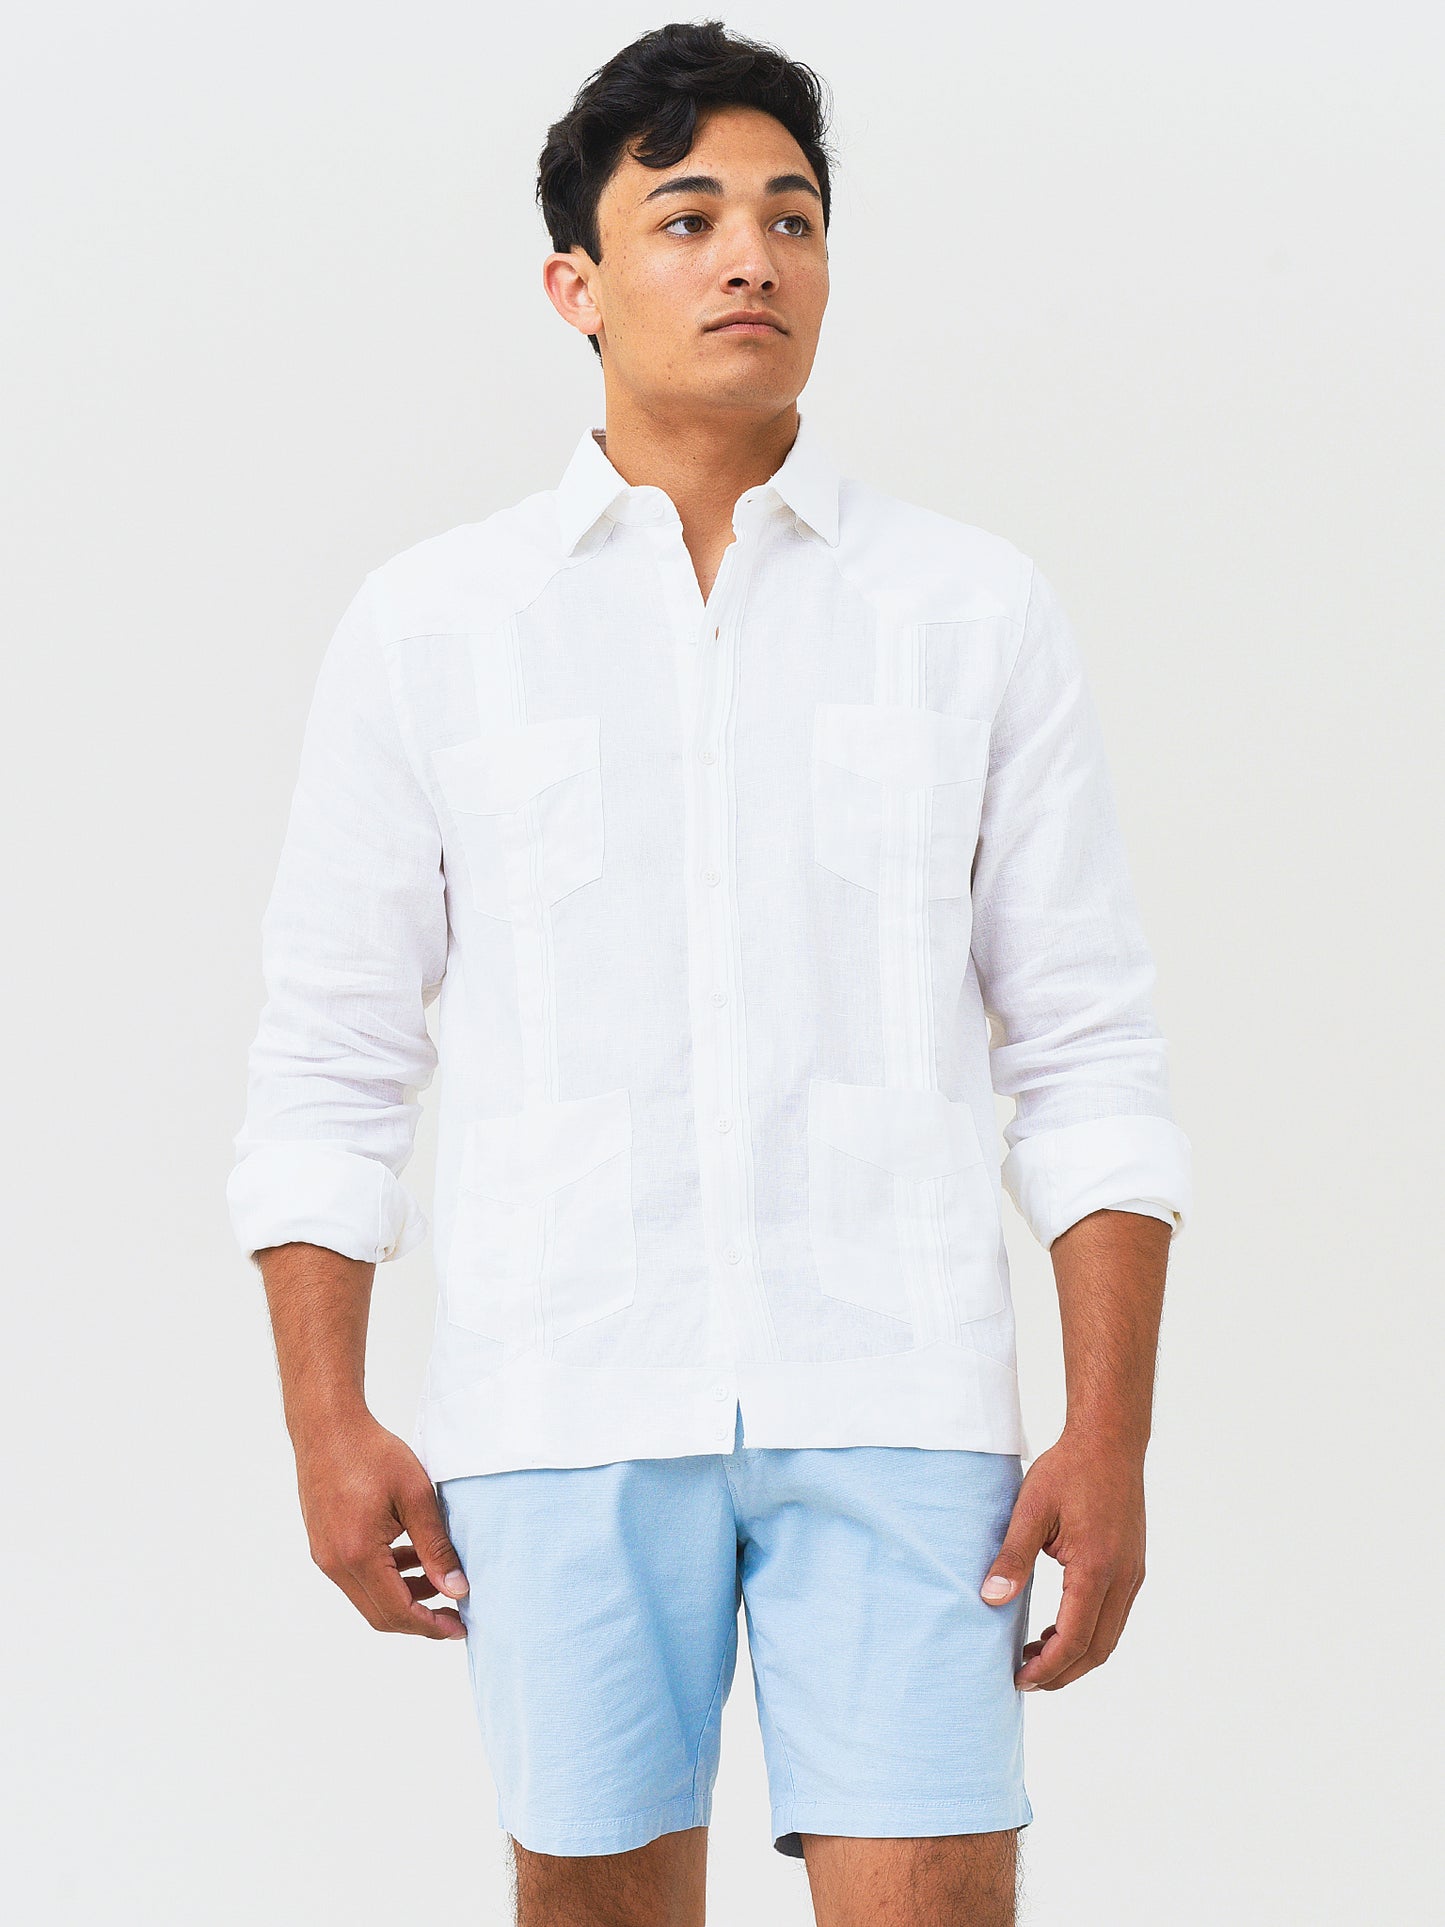 Saint Bernard Men's Long Sleeve Guaya Linen Shirt